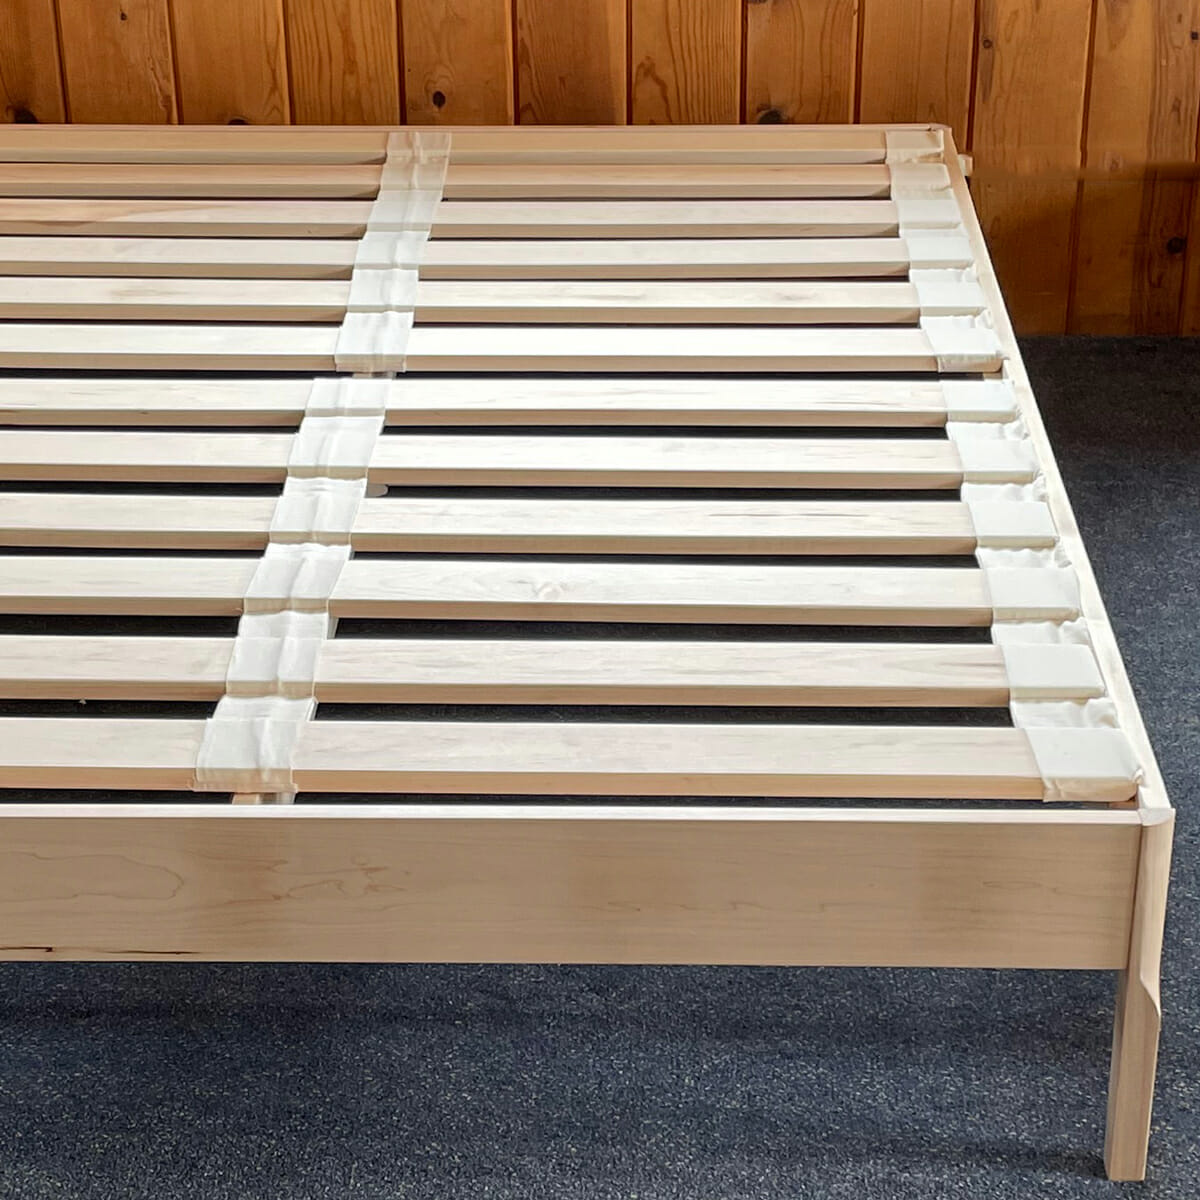 Wood Slat Mattress Foundation Order, Adjustable Bed Frame For Platform Bed